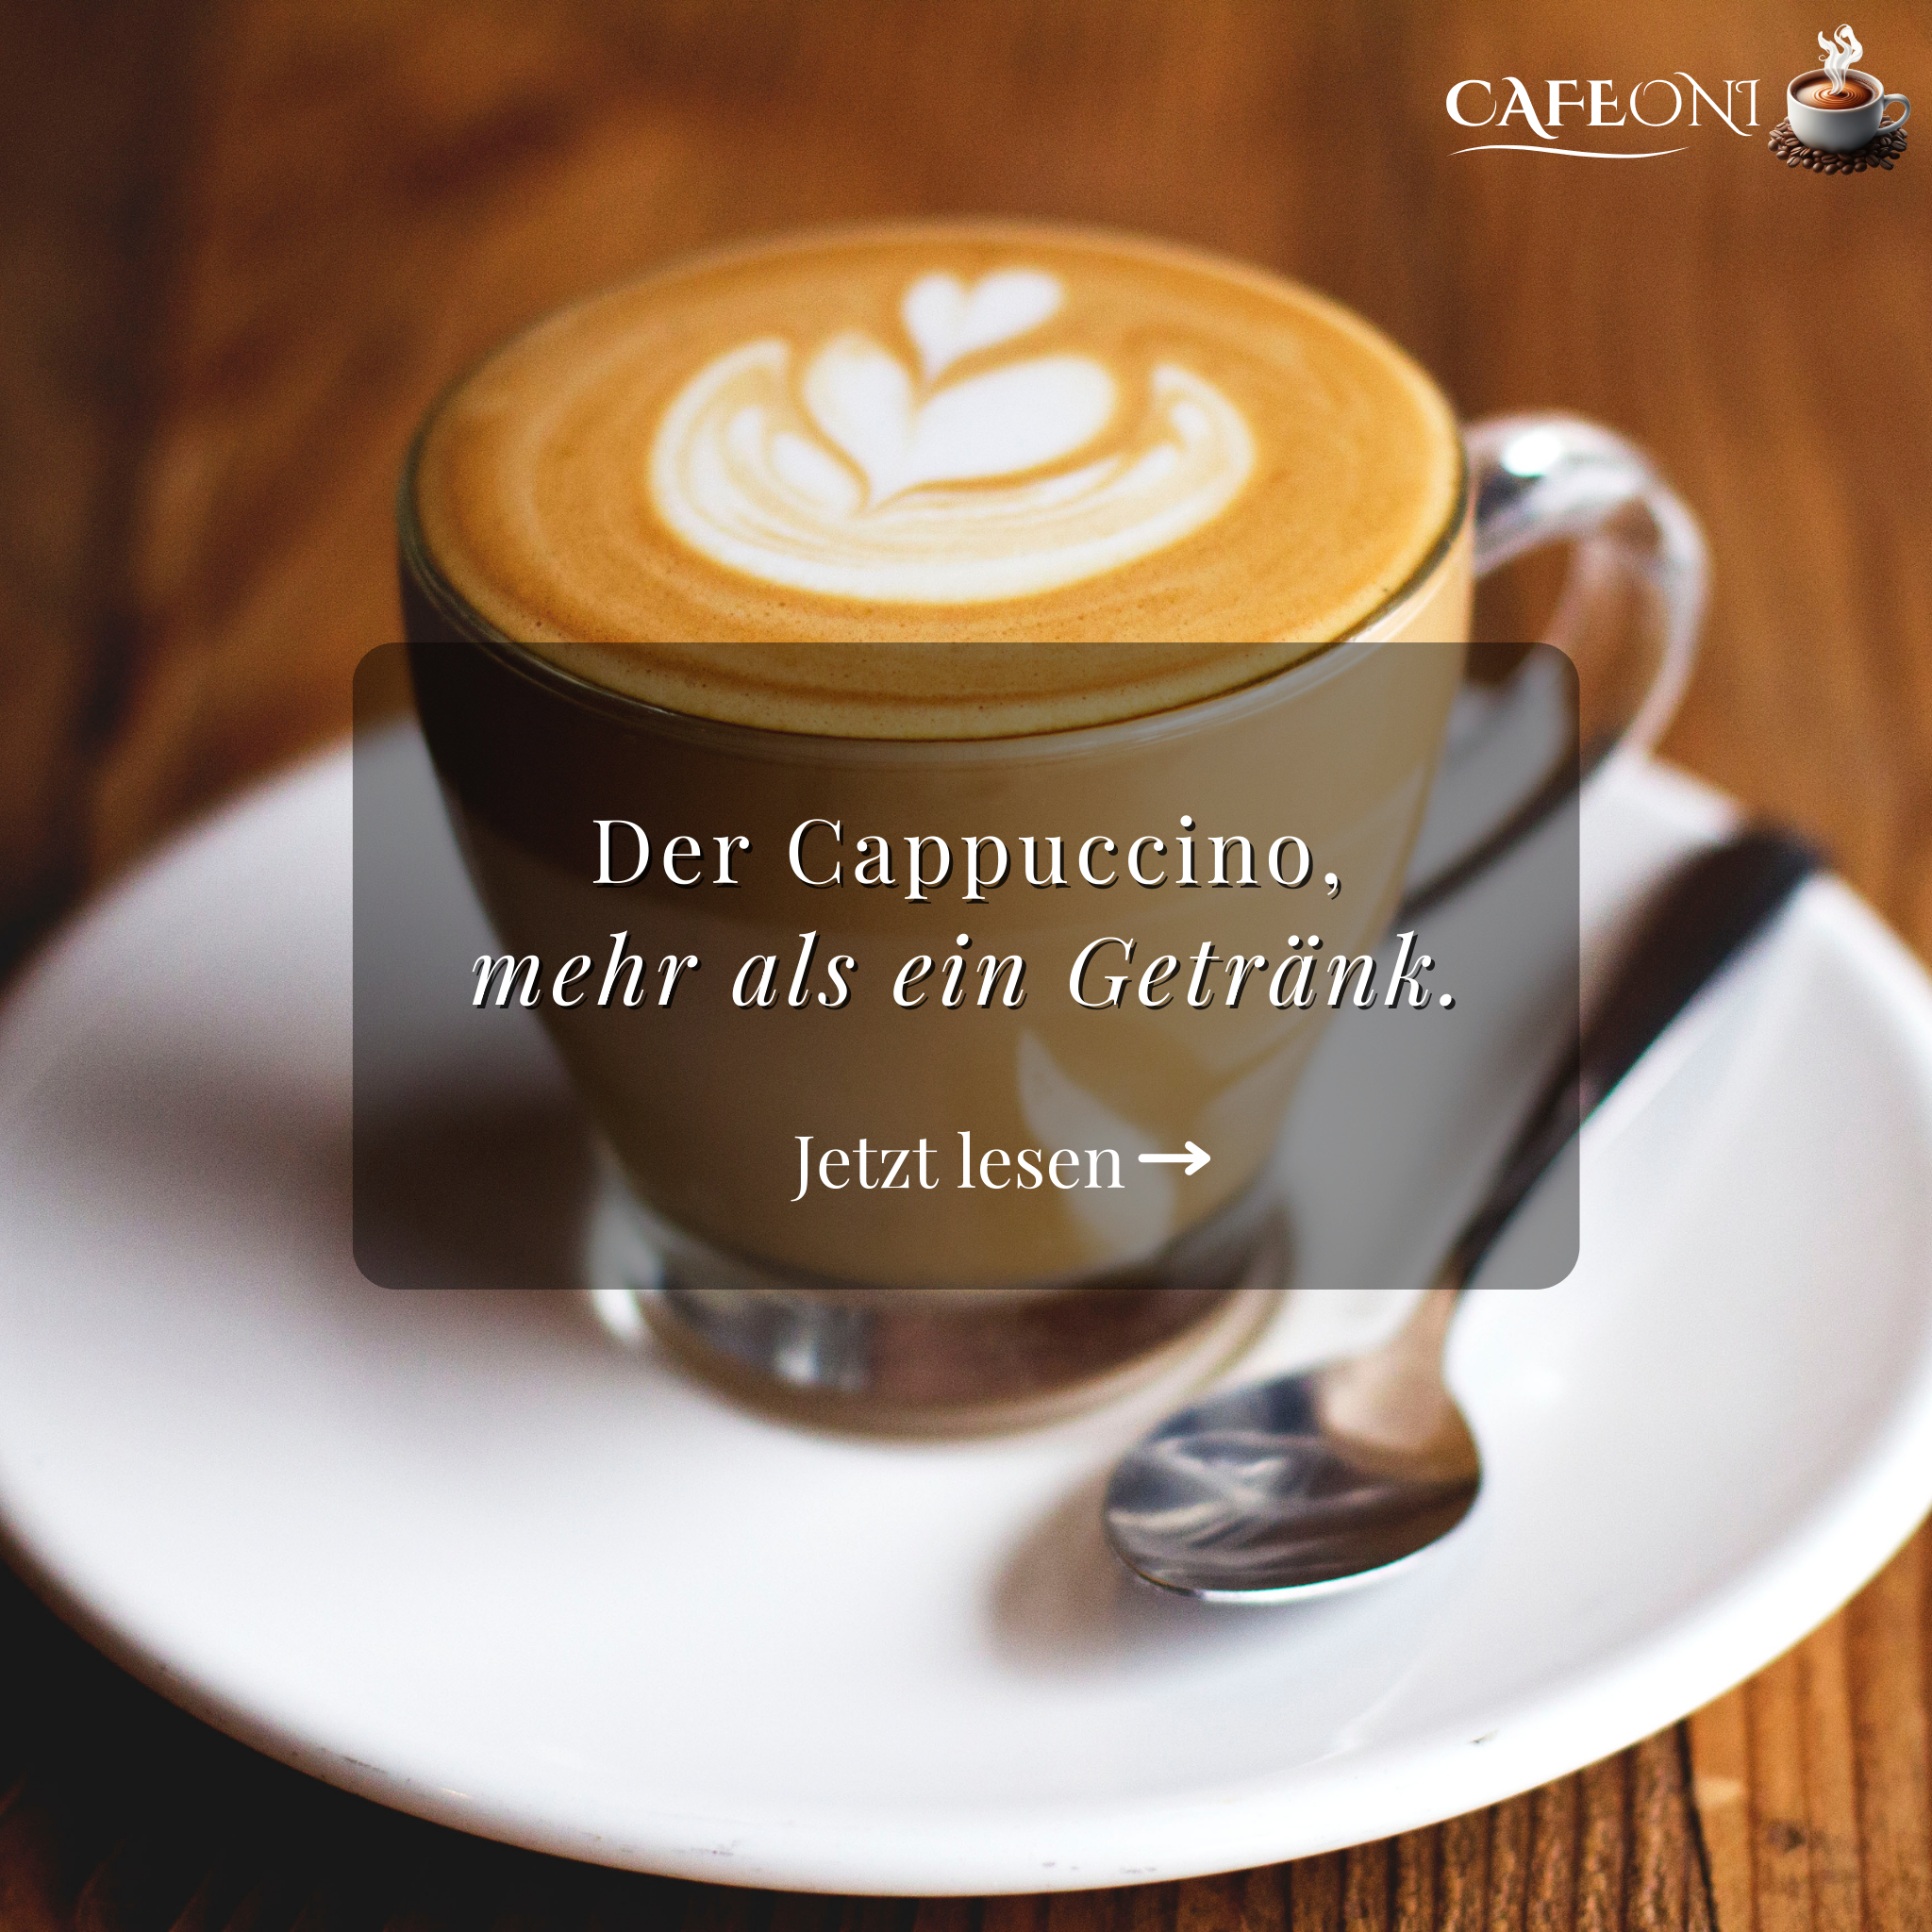 Der Cappuccino, mehr als ein Getränk!